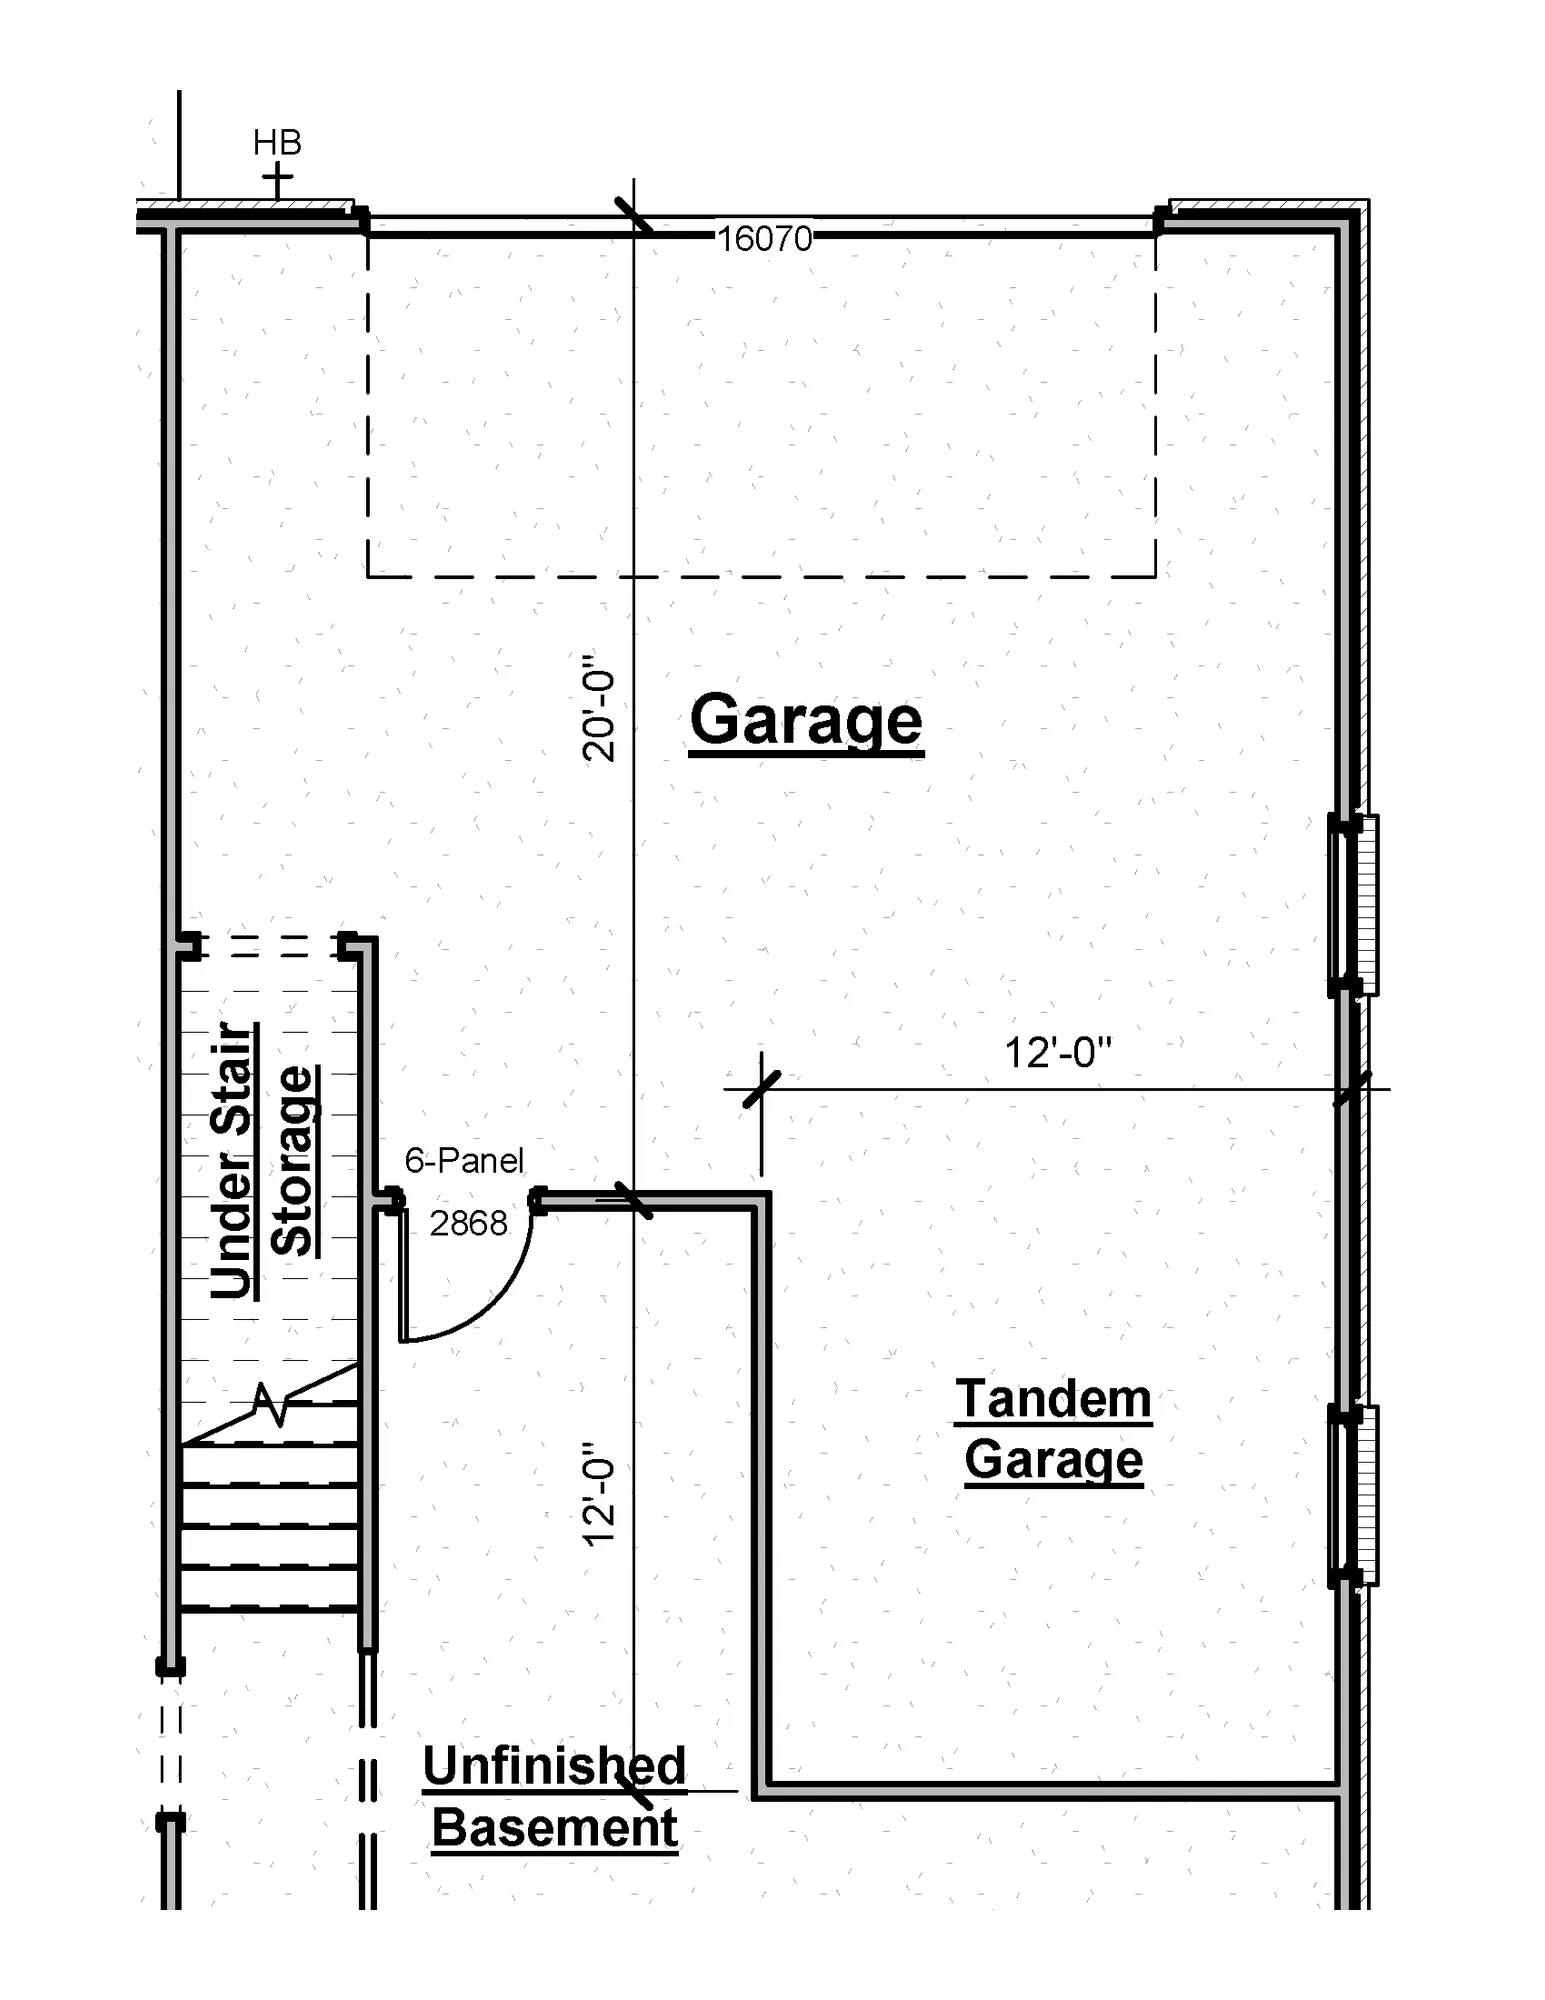 Tandem Garage Option - undefined